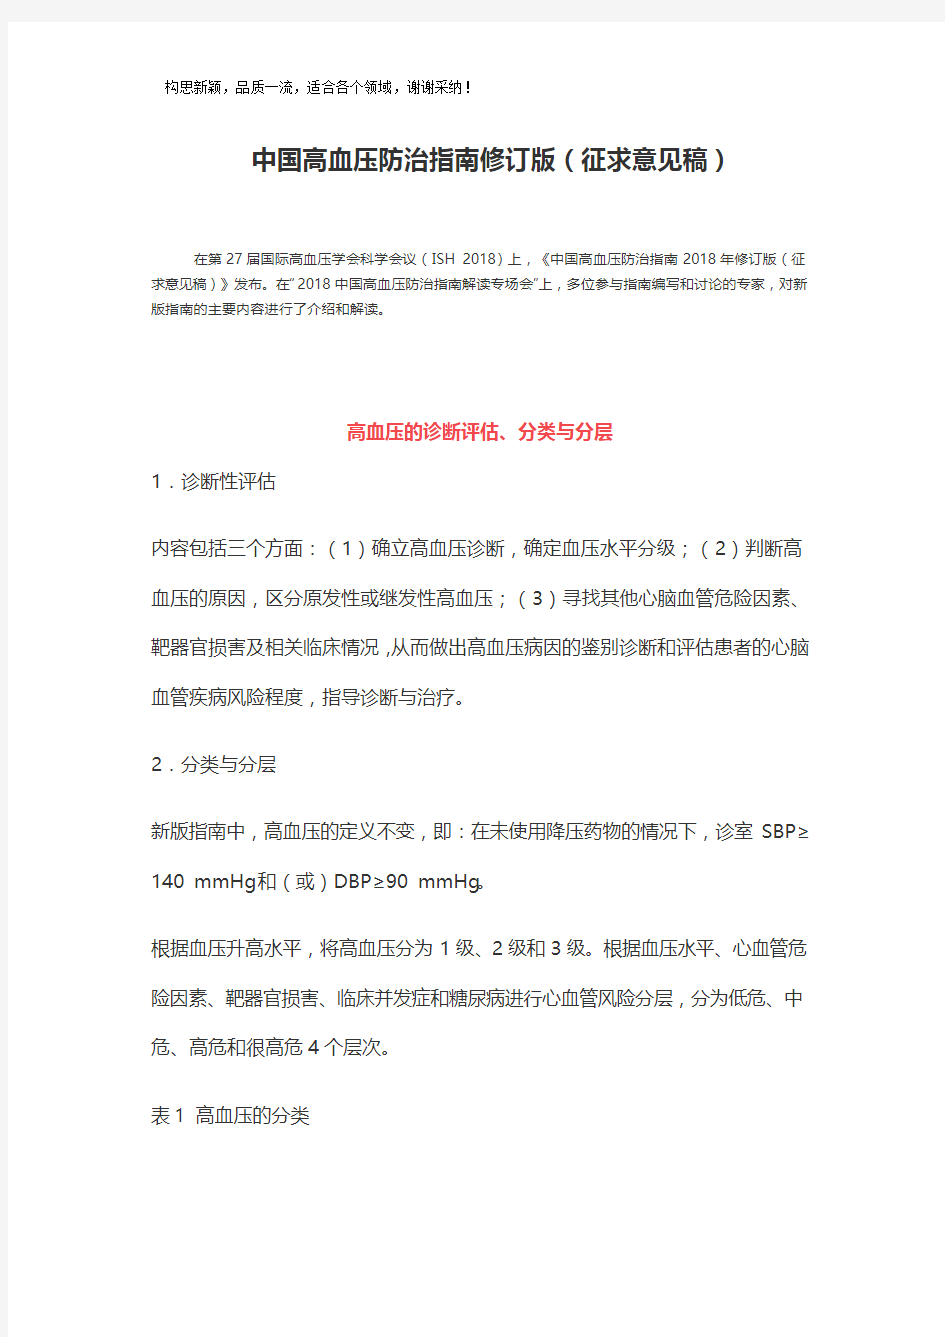 2019年中国高血压防治指南修订版(征求意见稿)